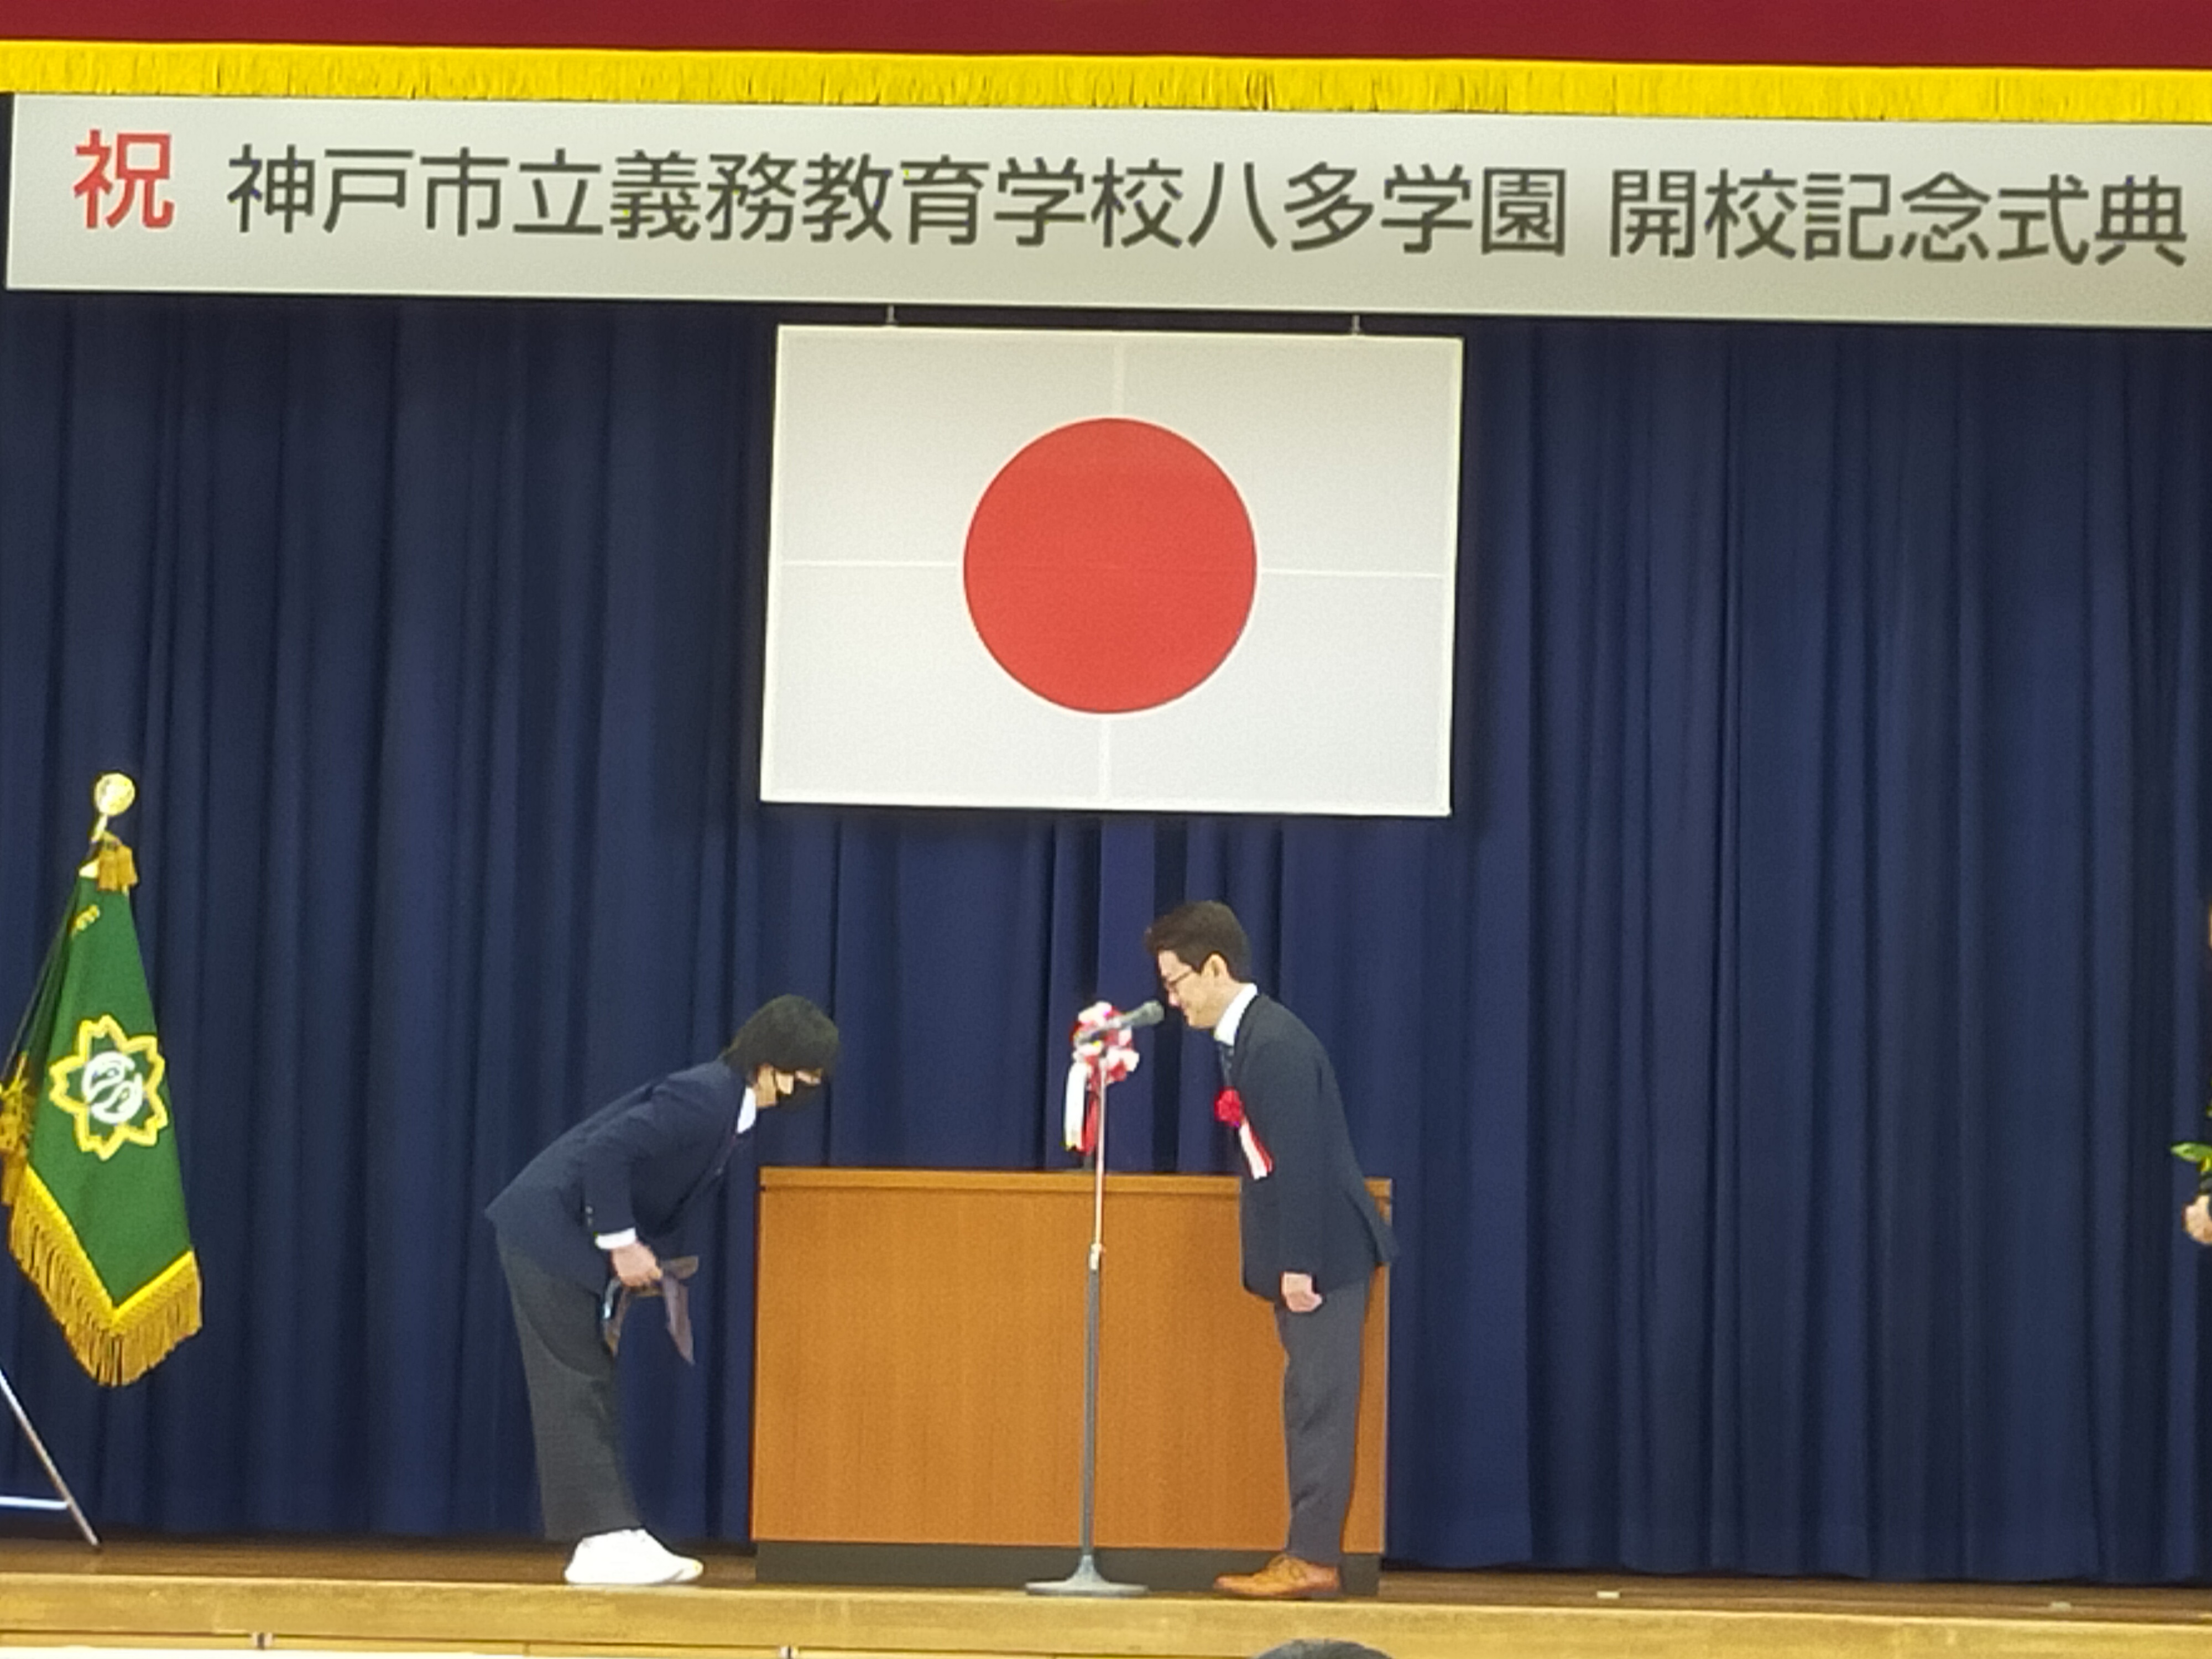 神戸市立義務教育学校「八多学園」の開校記念式典